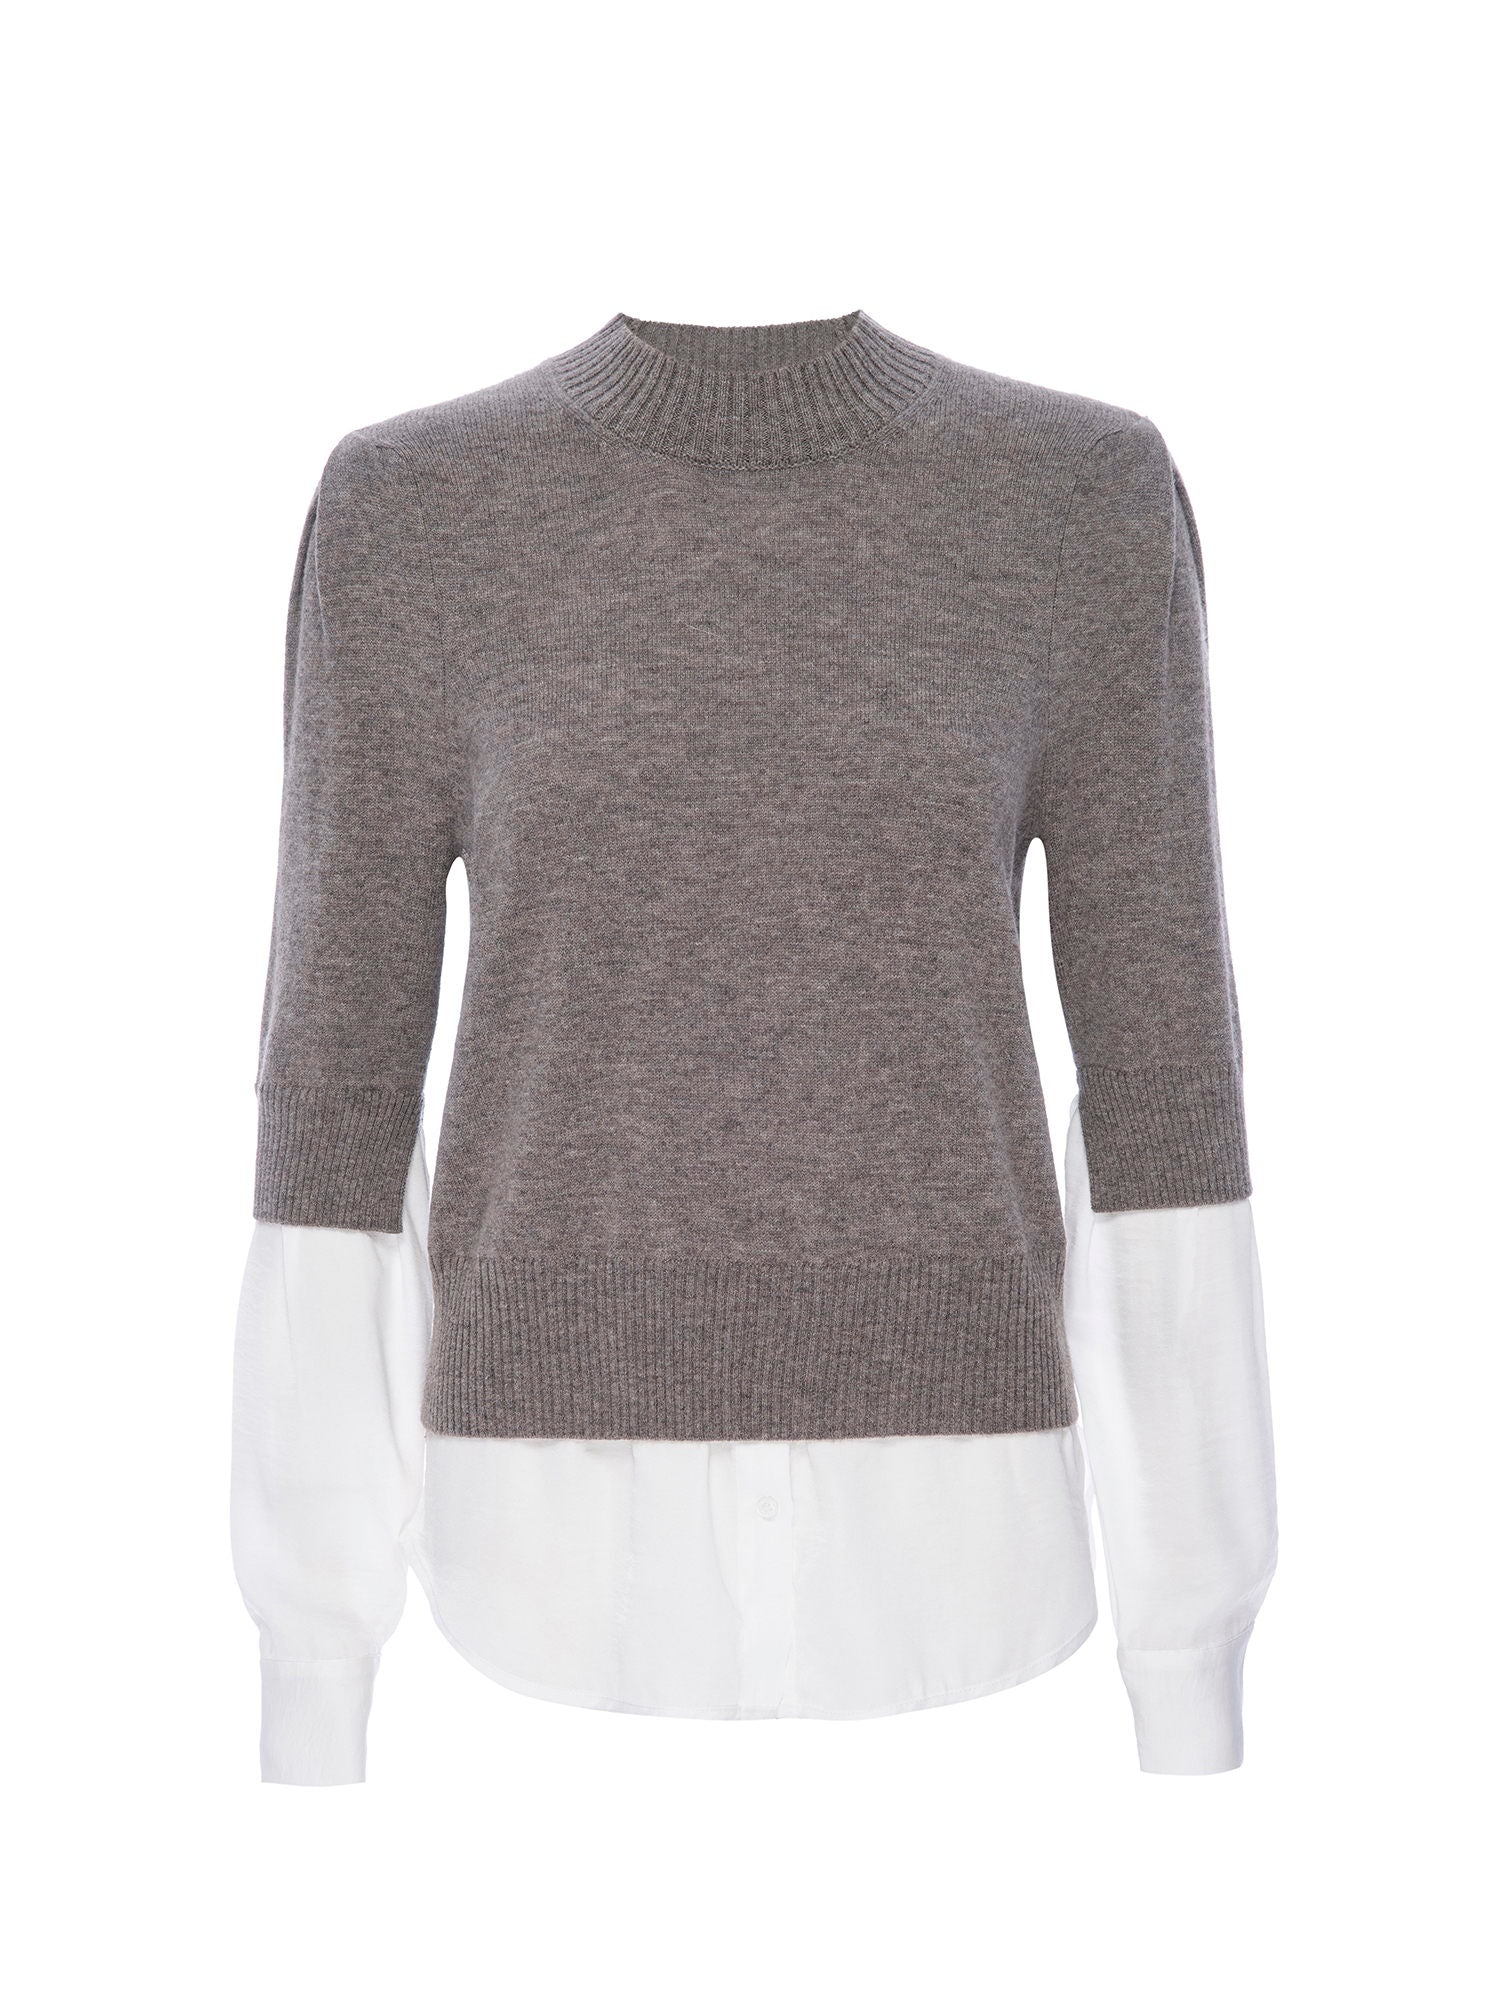 Stella light grey layered crewneck sweater flat view